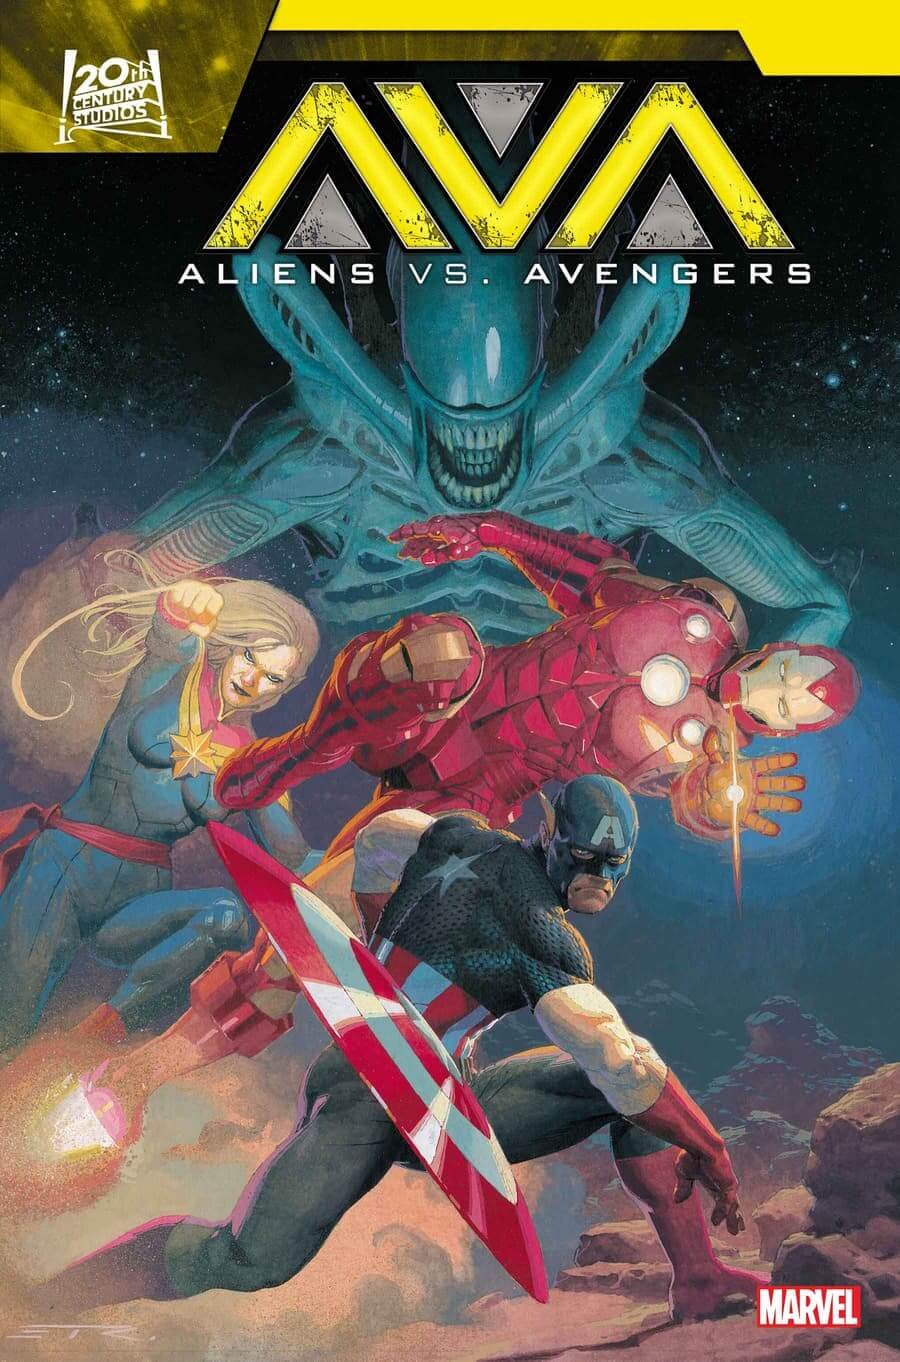 Couverture de Aliens Vs Avengers 1 par Esad Ribic